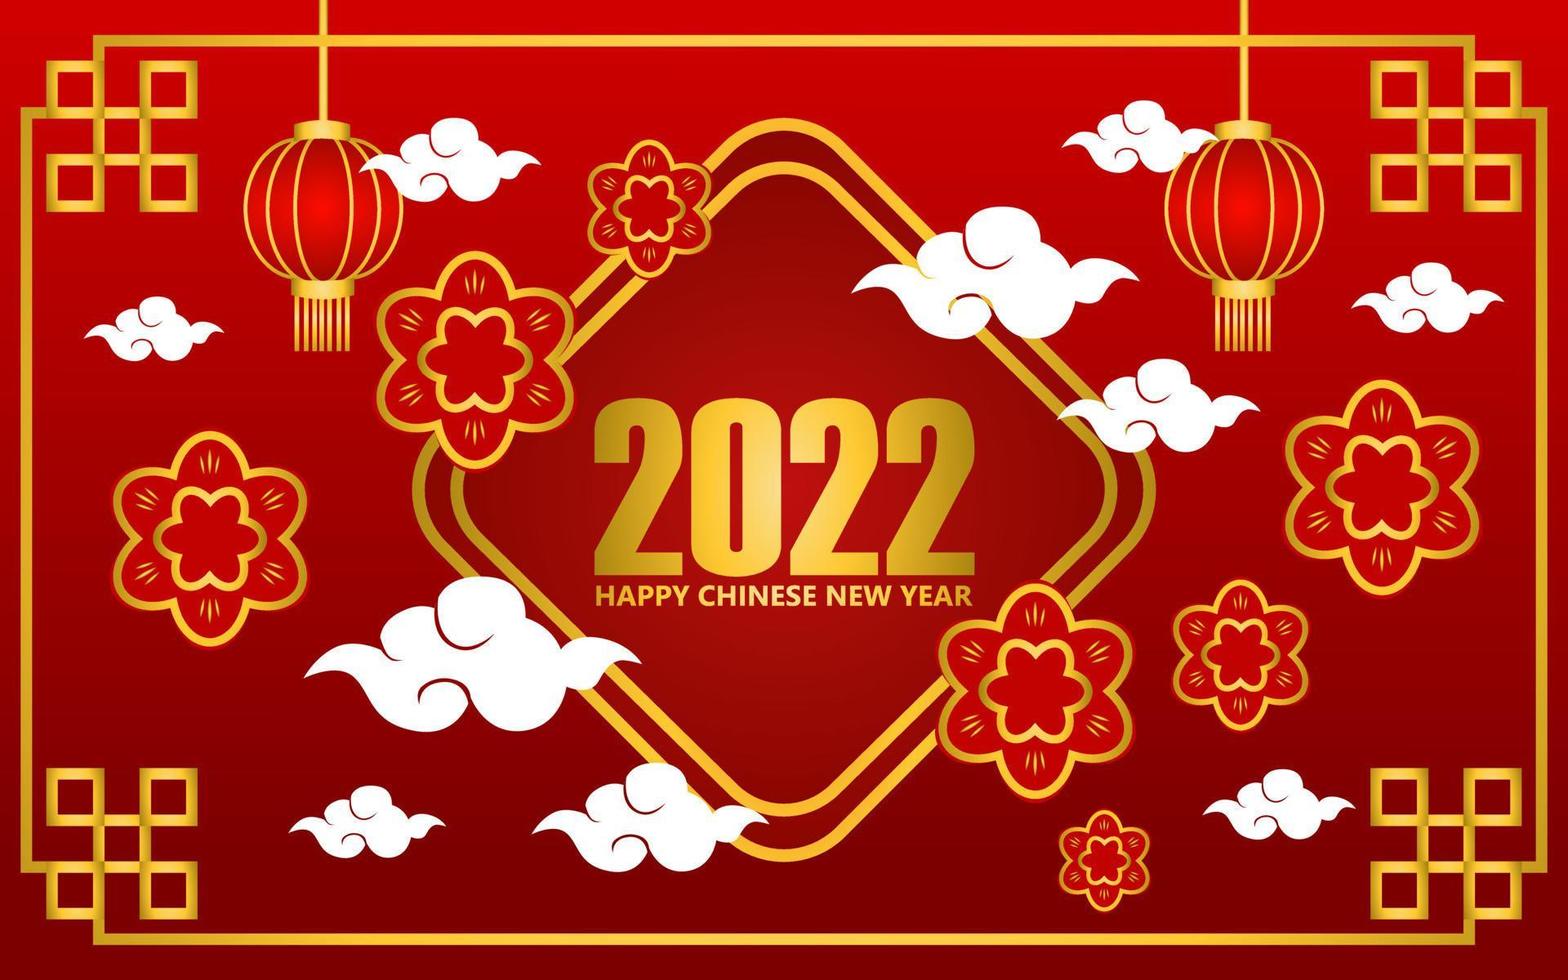 ano novo chinês 2022 saudando o projeto do plano de fundo na cor vermelha. designs para banners e capas. desenho de ornamento chinês vetor